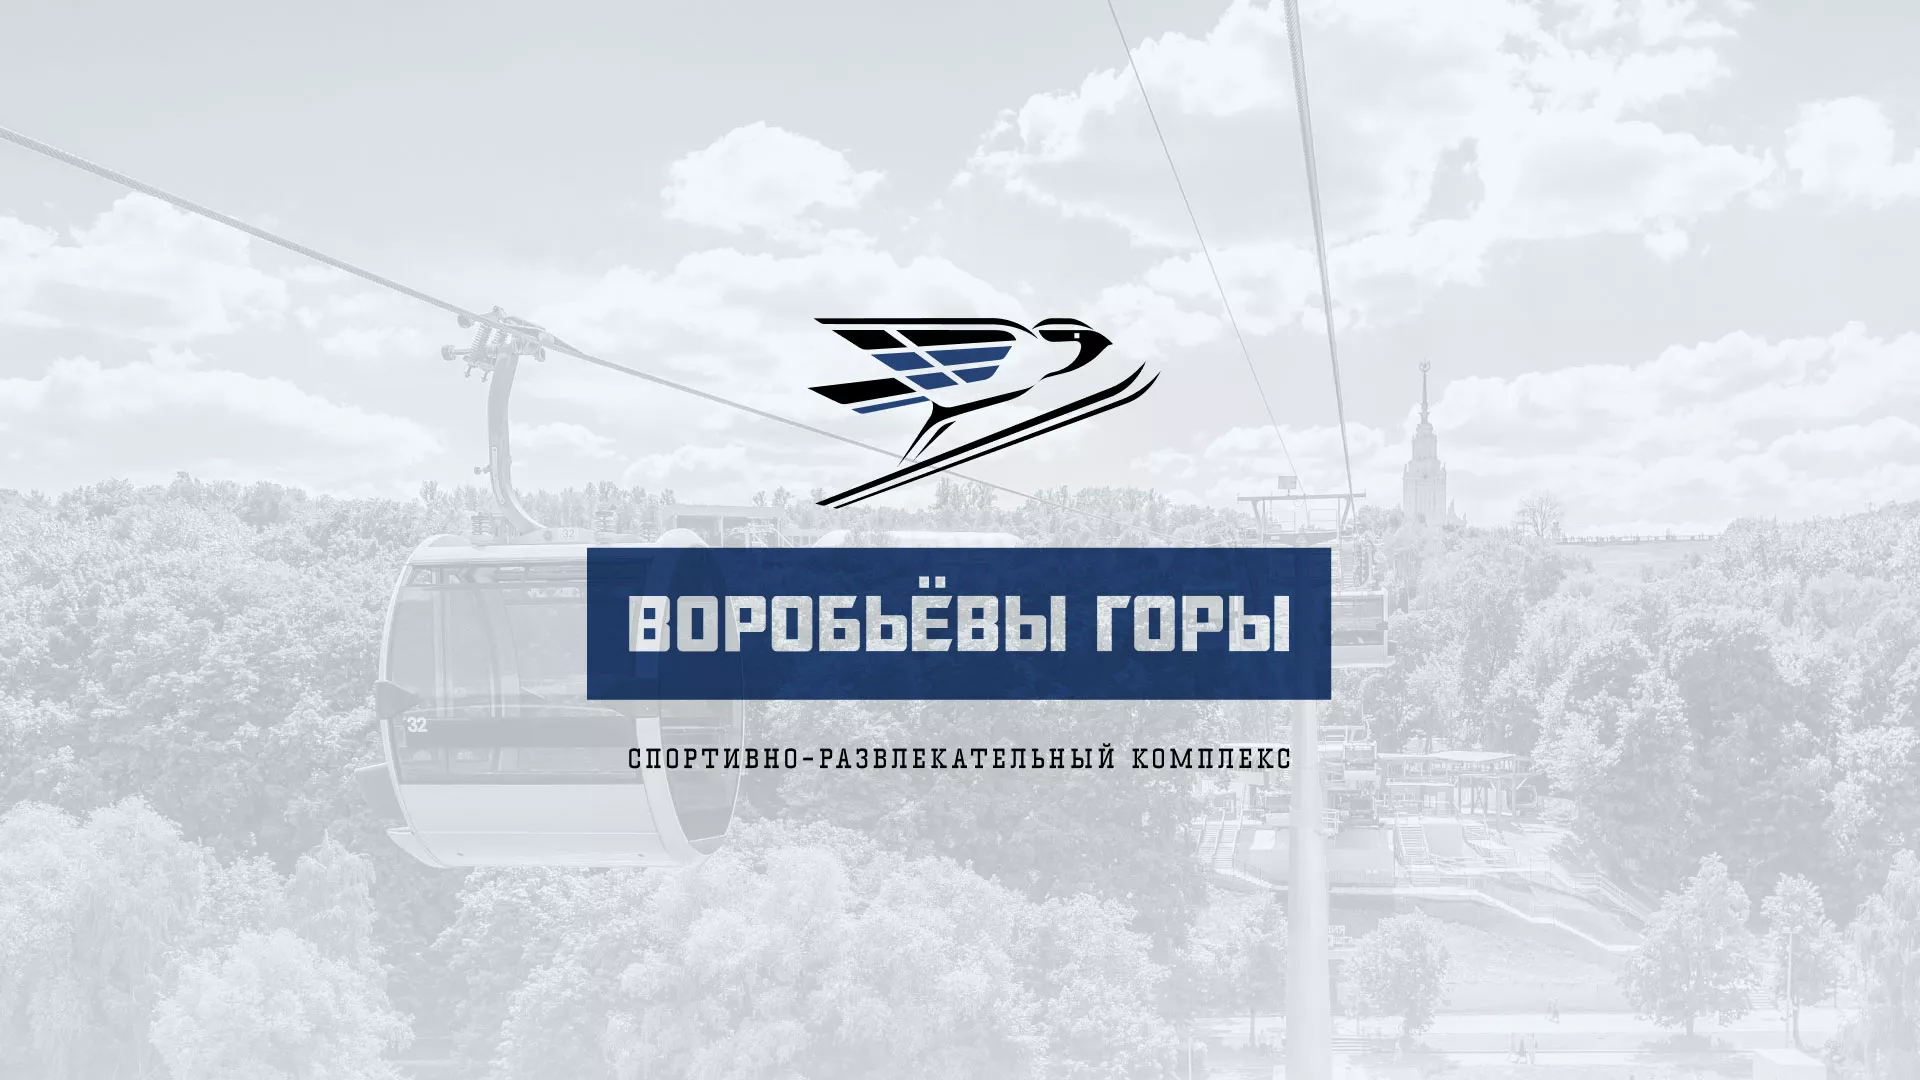 Разработка сайта в Когалыме для спортивно-развлекательного комплекса «Воробьёвы горы»